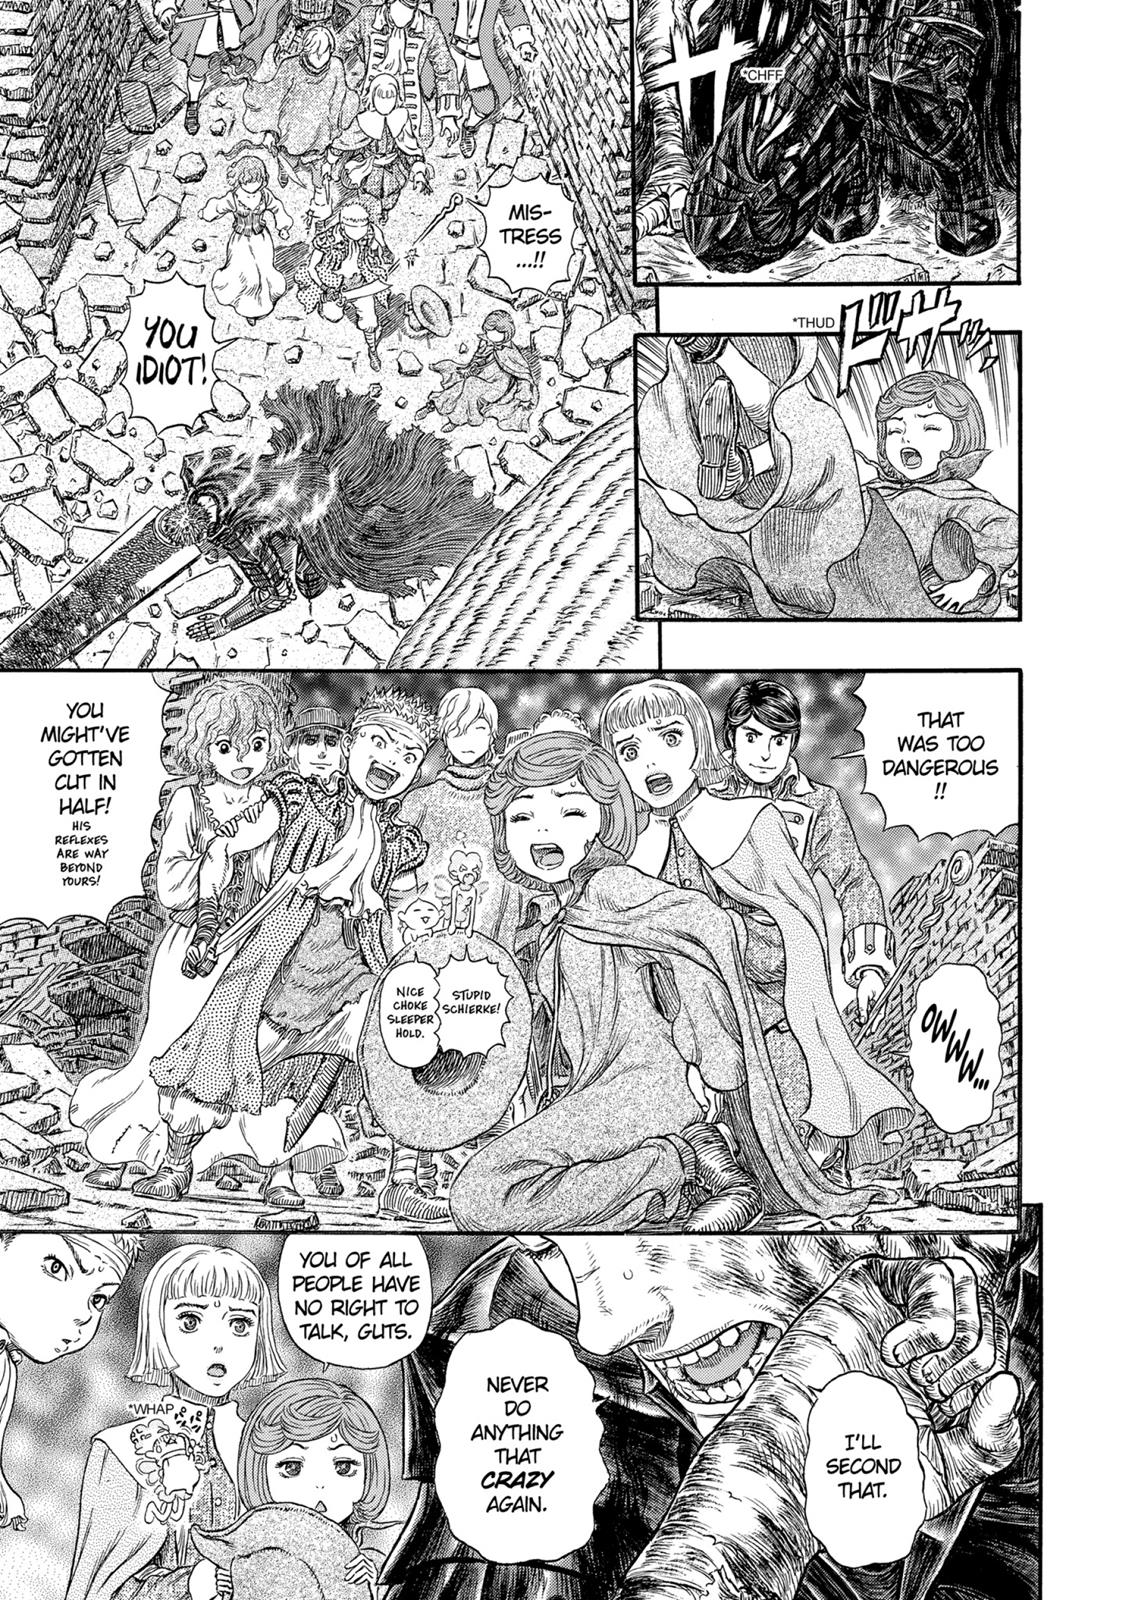 Berserk Manga Chapter 317 image 08